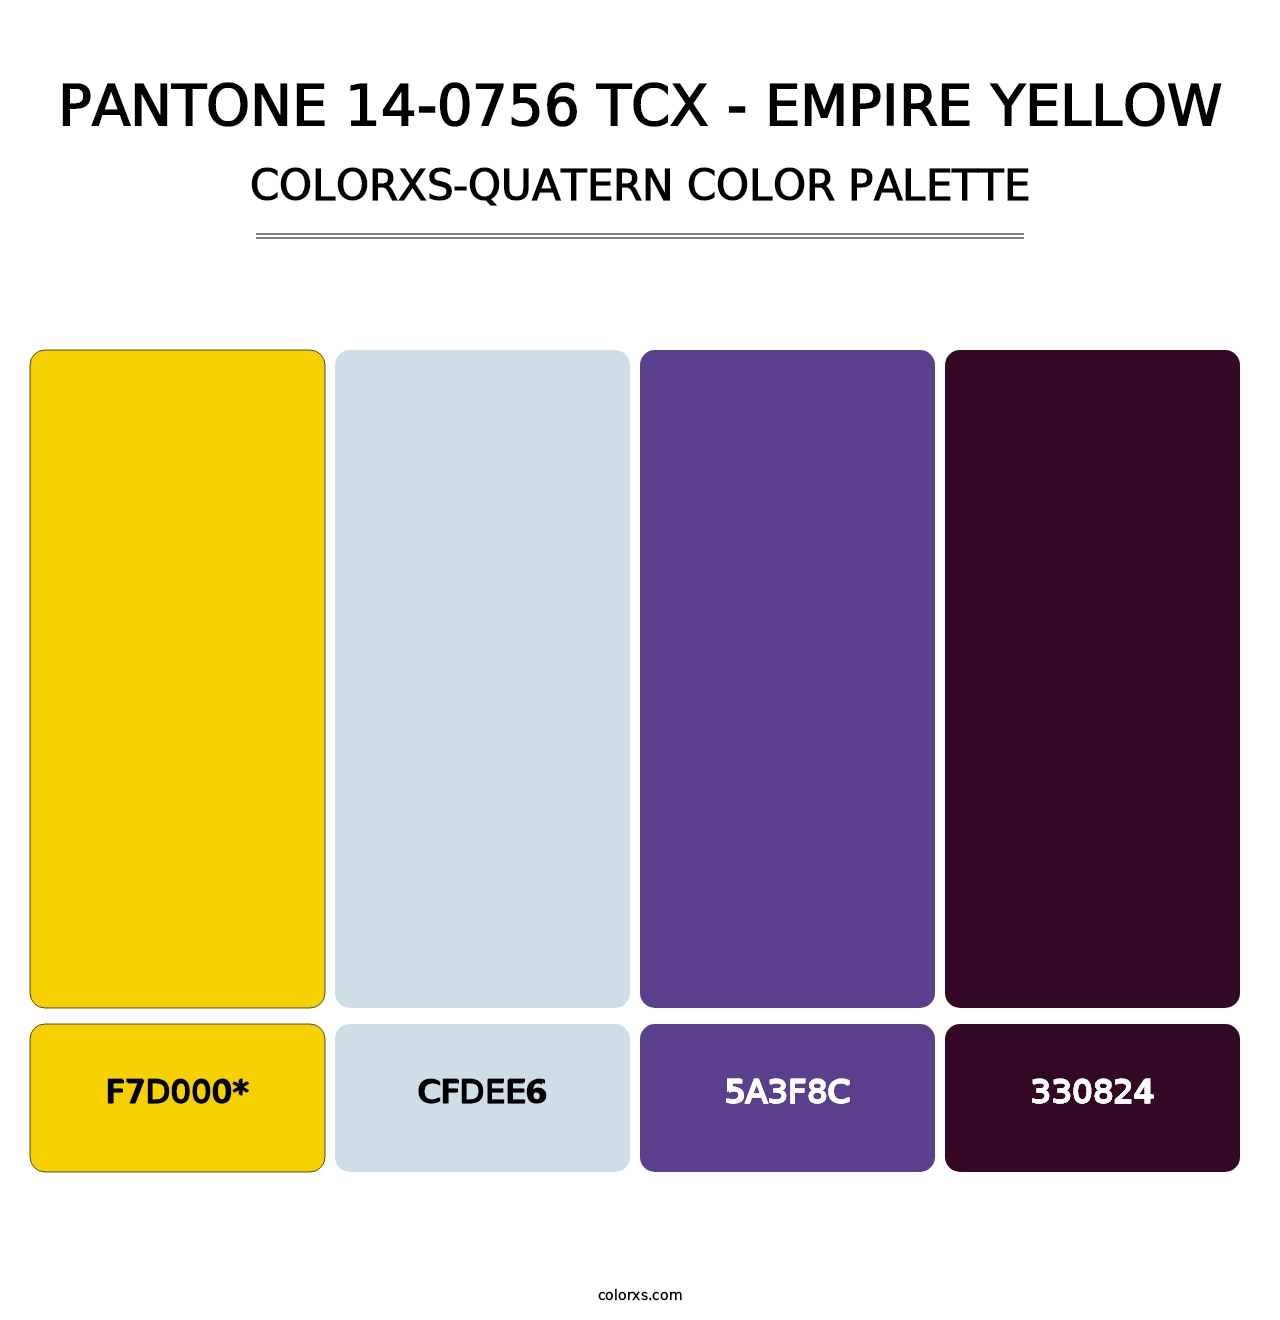 PANTONE 14-0756 TCX - Empire Yellow - Colorxs Quad Palette